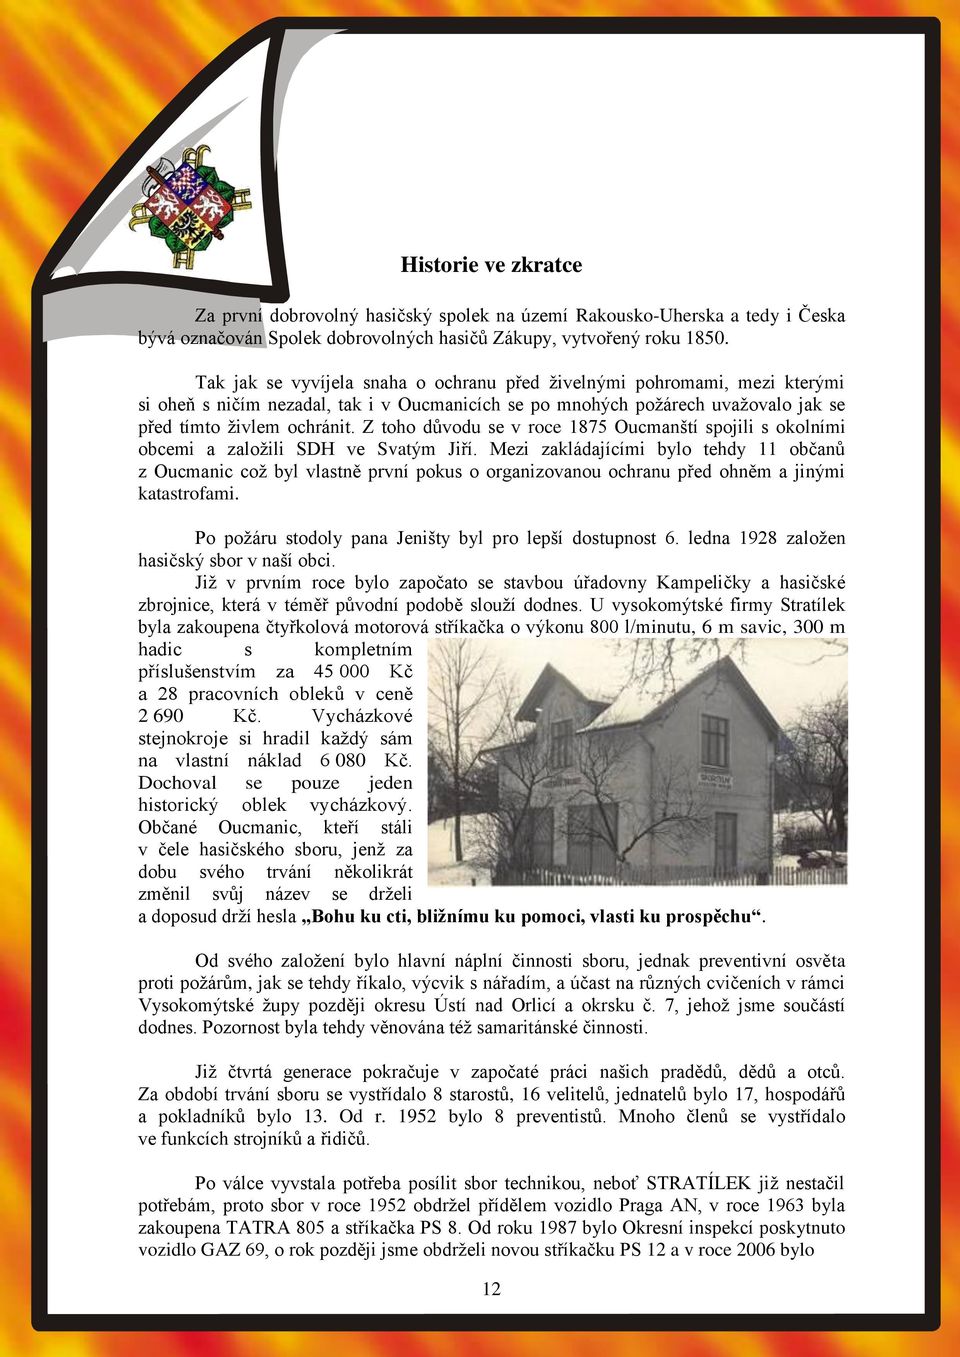 Z toho důvodu se v roce 1875 Oucmanští spojili s okolními obcemi a založili SDH ve Svatým Jiří.